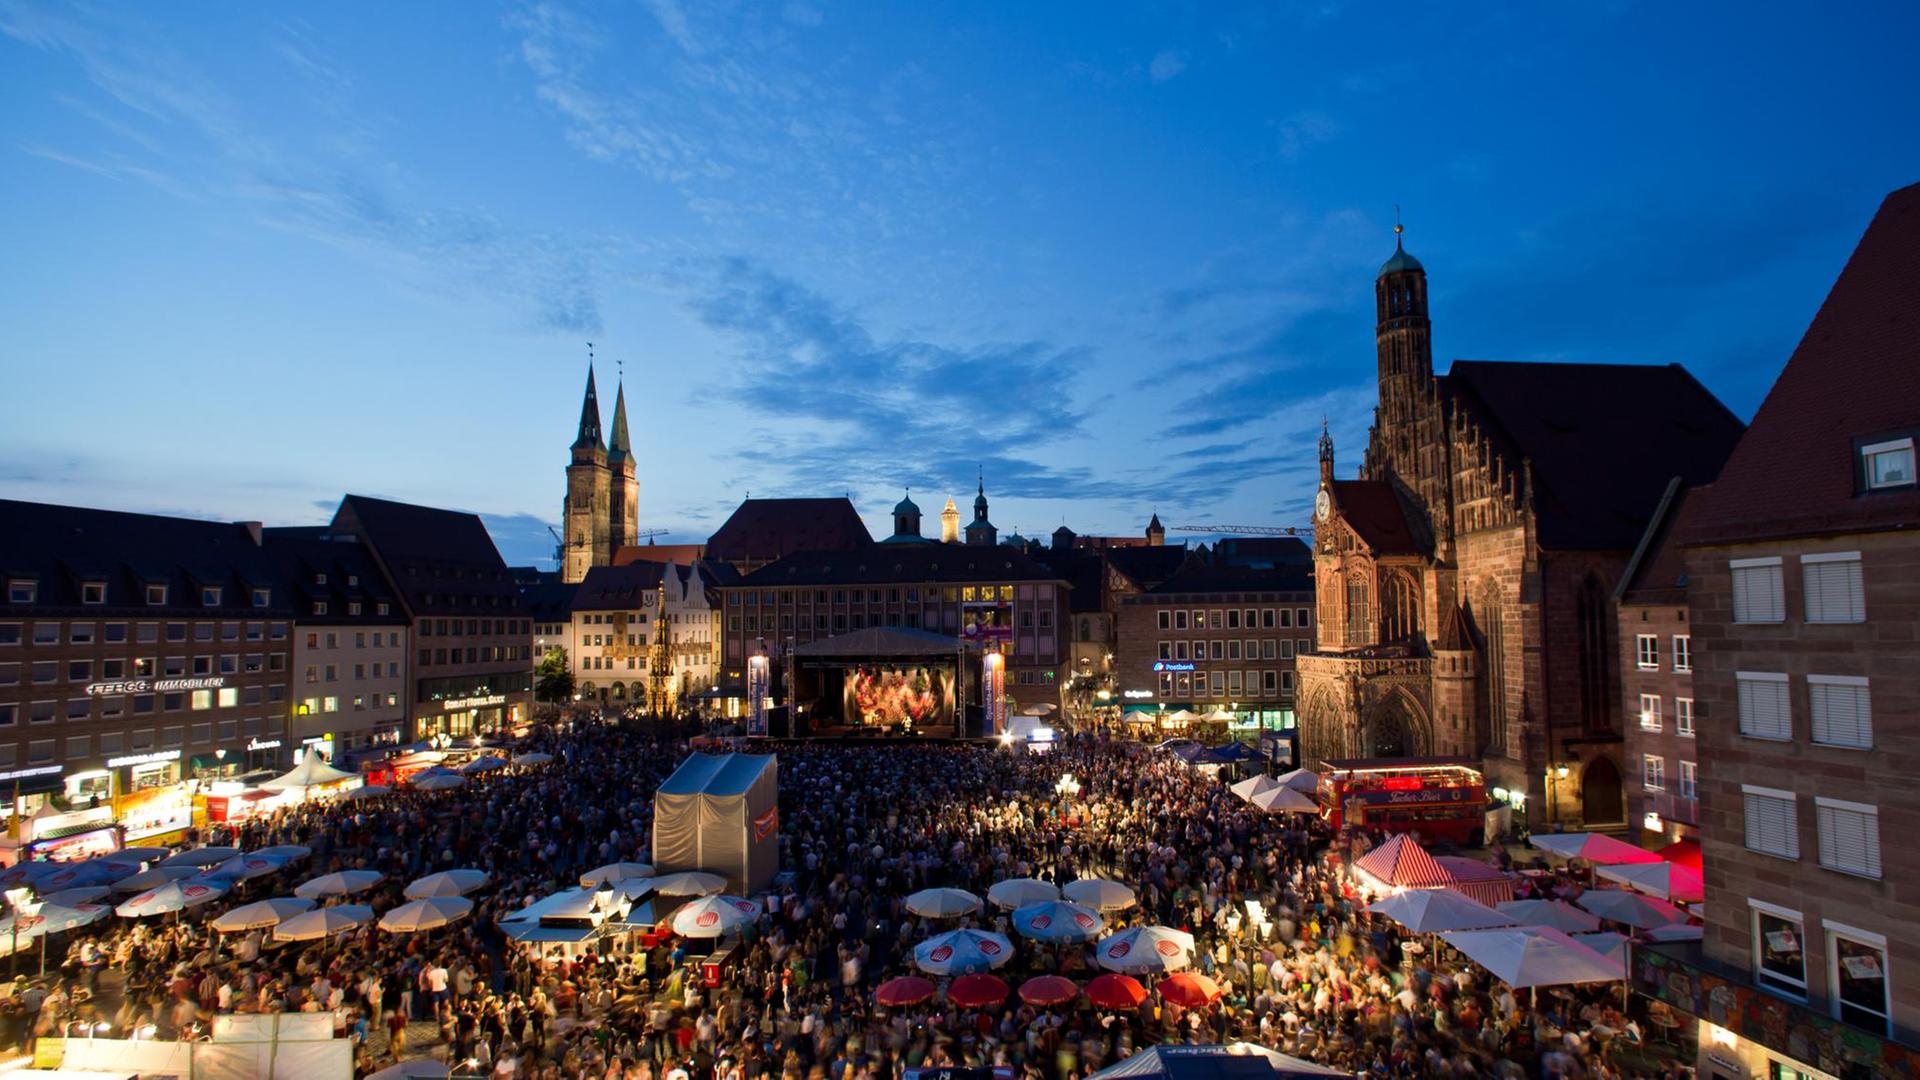 Blick auf den Nürnberger Hauptmarkt mit Kirche im Hintergrund, auf dem Platz Bühnen, viele Menschen